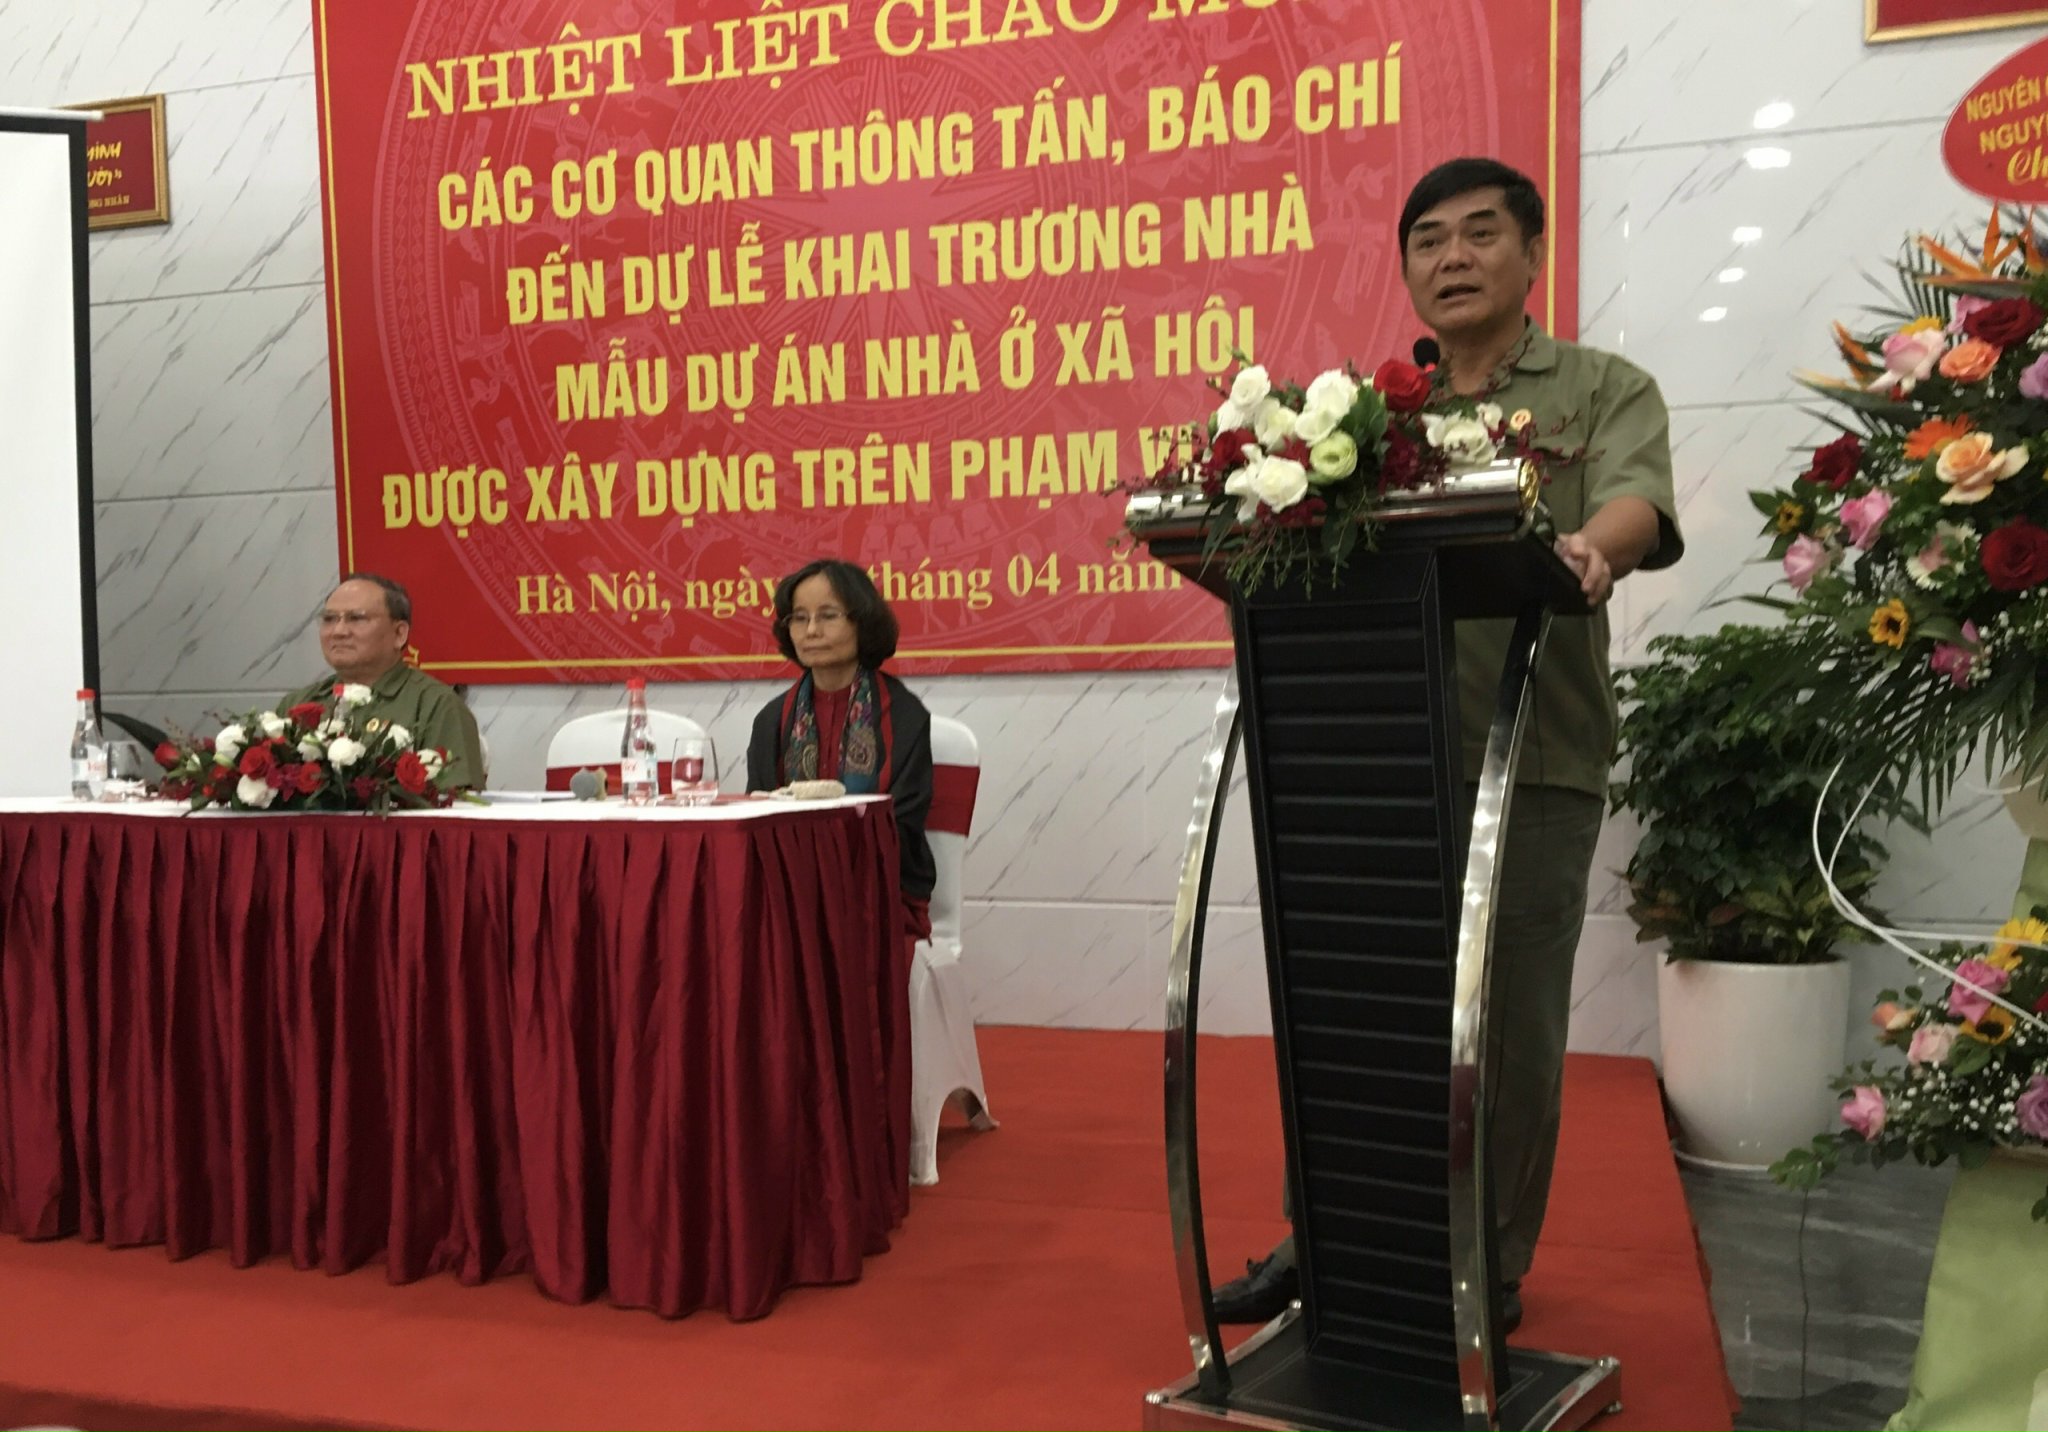 Doanh nhân cựu chiến binh Nguyễn Hữu Đường: Gây khó dễ làm nhà ở xã hội là có tội với dân, với nước - 1